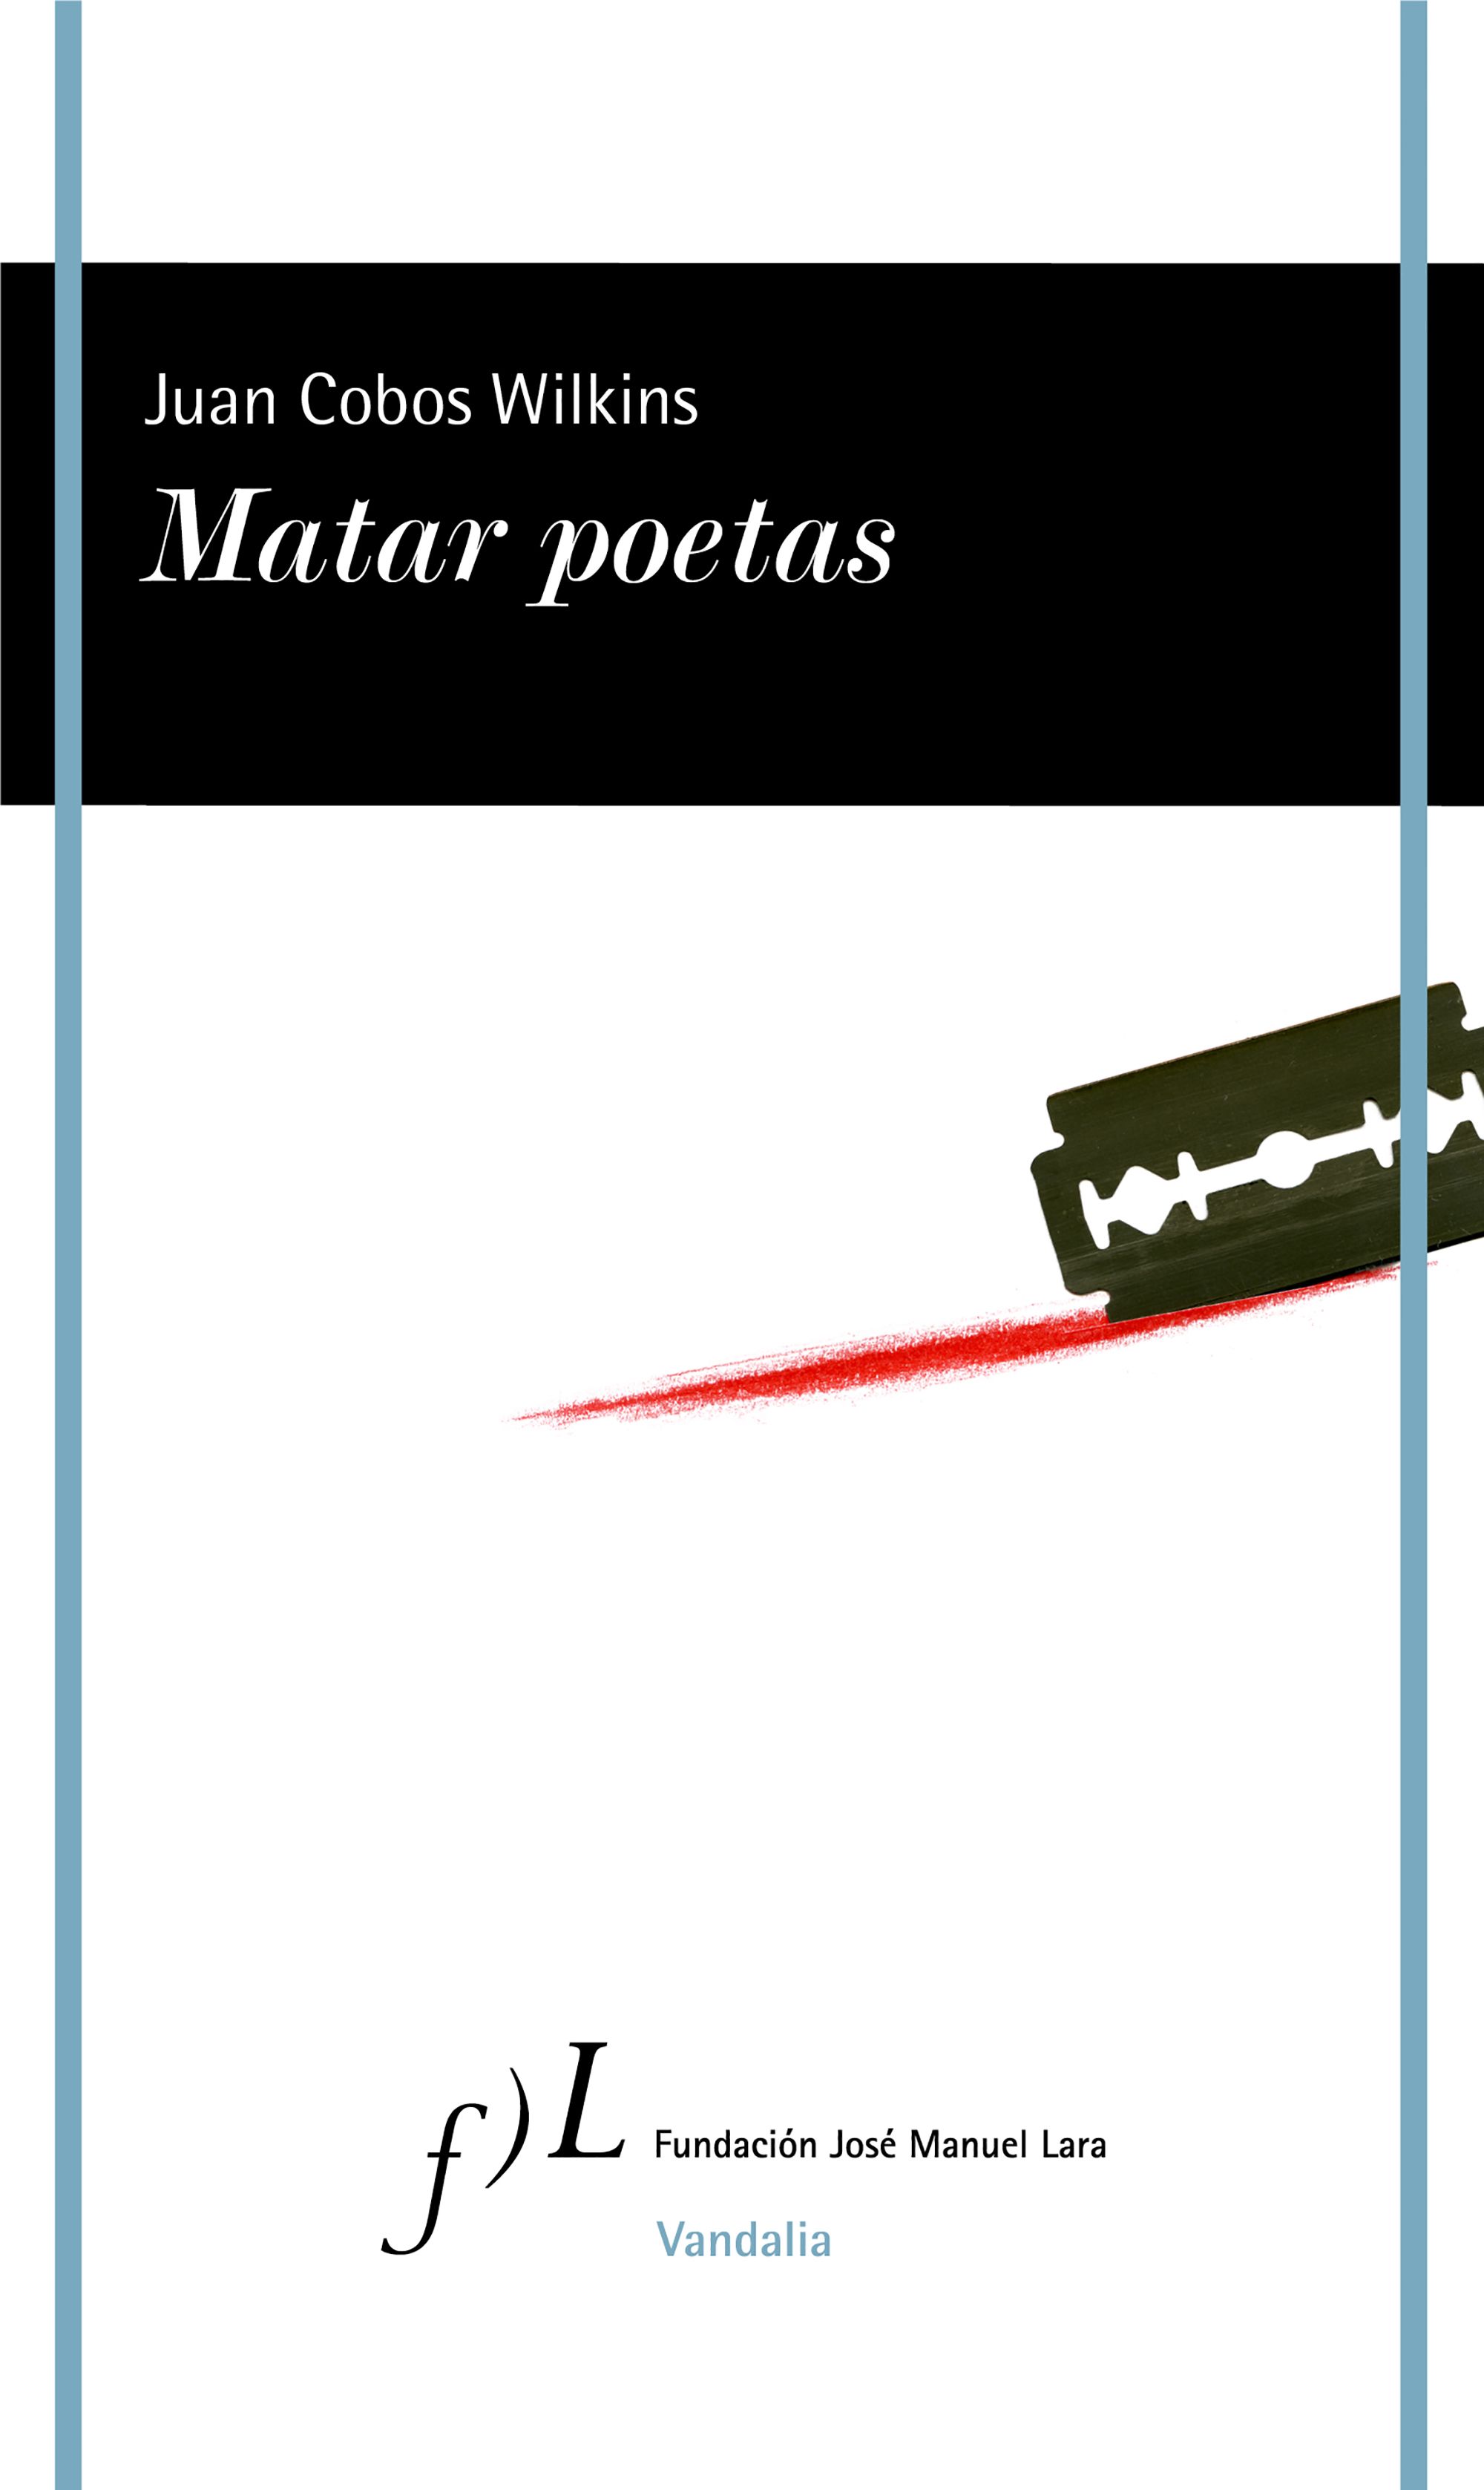 JUAN COBOS WILKINS. Matar poetas (Fundación José Manuel Lara)